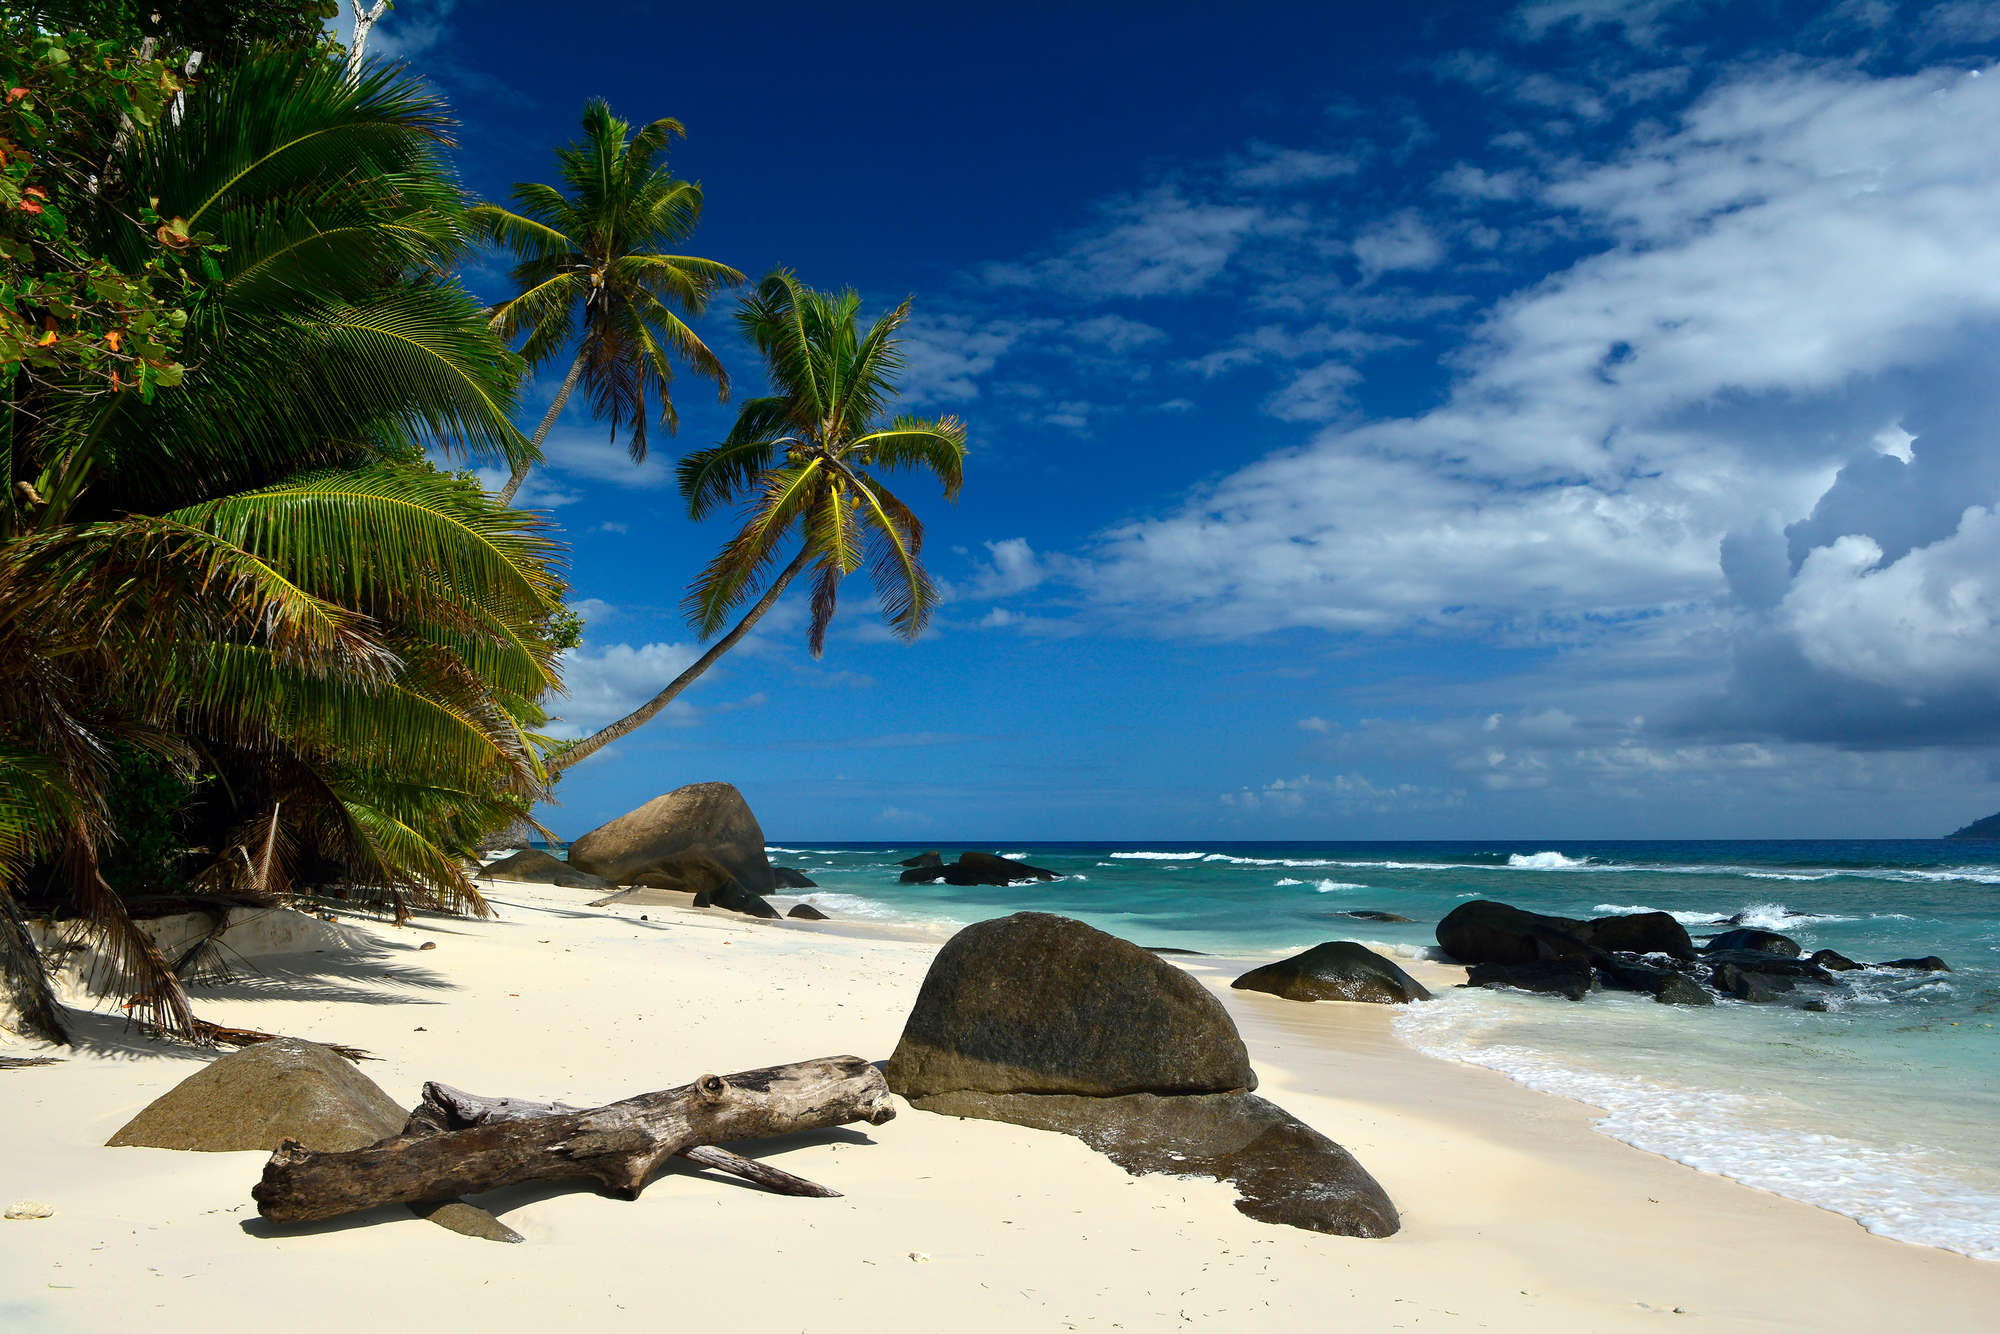             South Seas mural Seychelles palm trees & beach on matt smooth non-woven
        